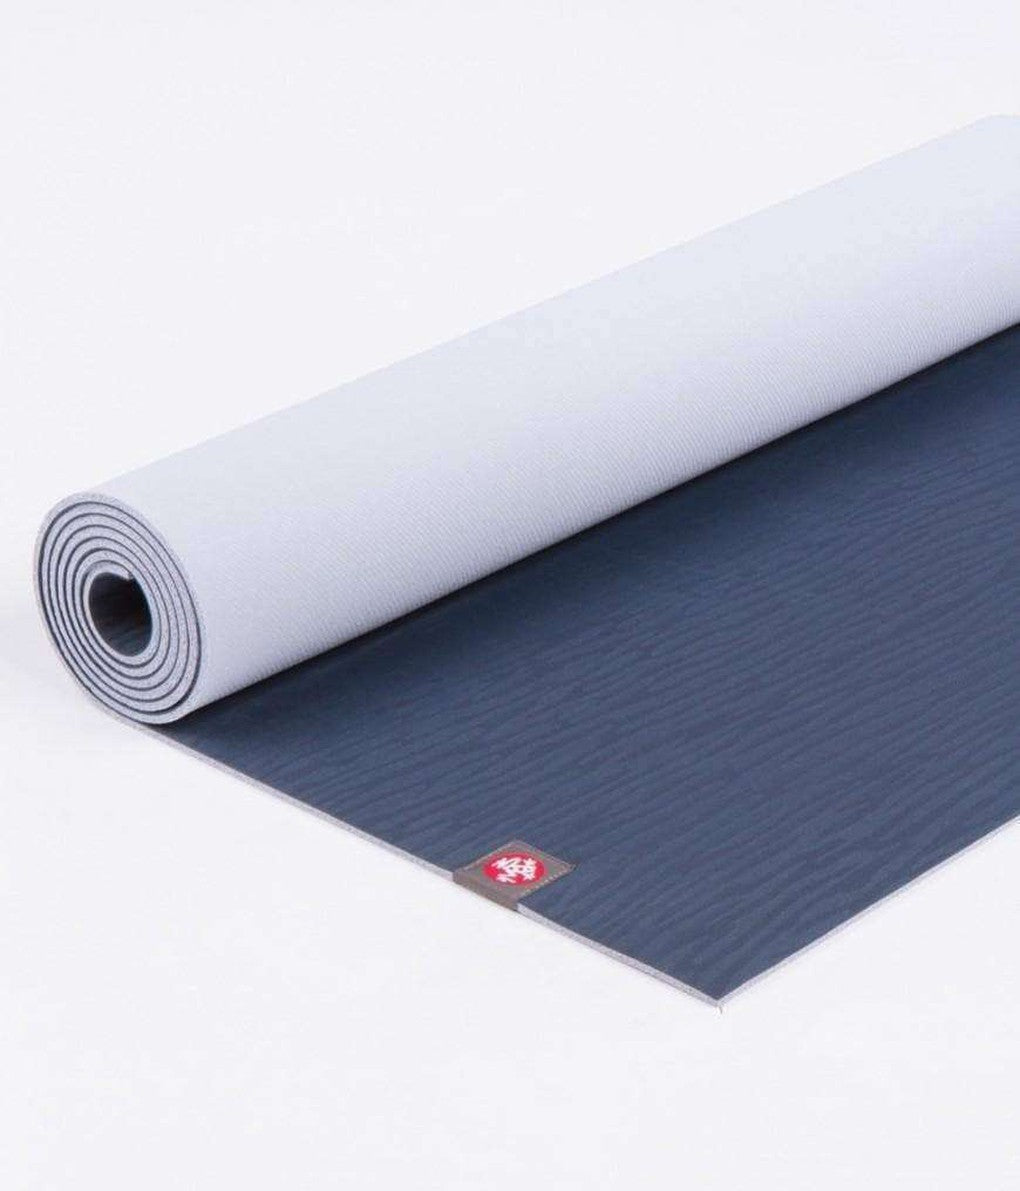 Manduka] GRP ADAPT LONG Grip Yoga Mat Long 200cm (5mm) Hot Yoga